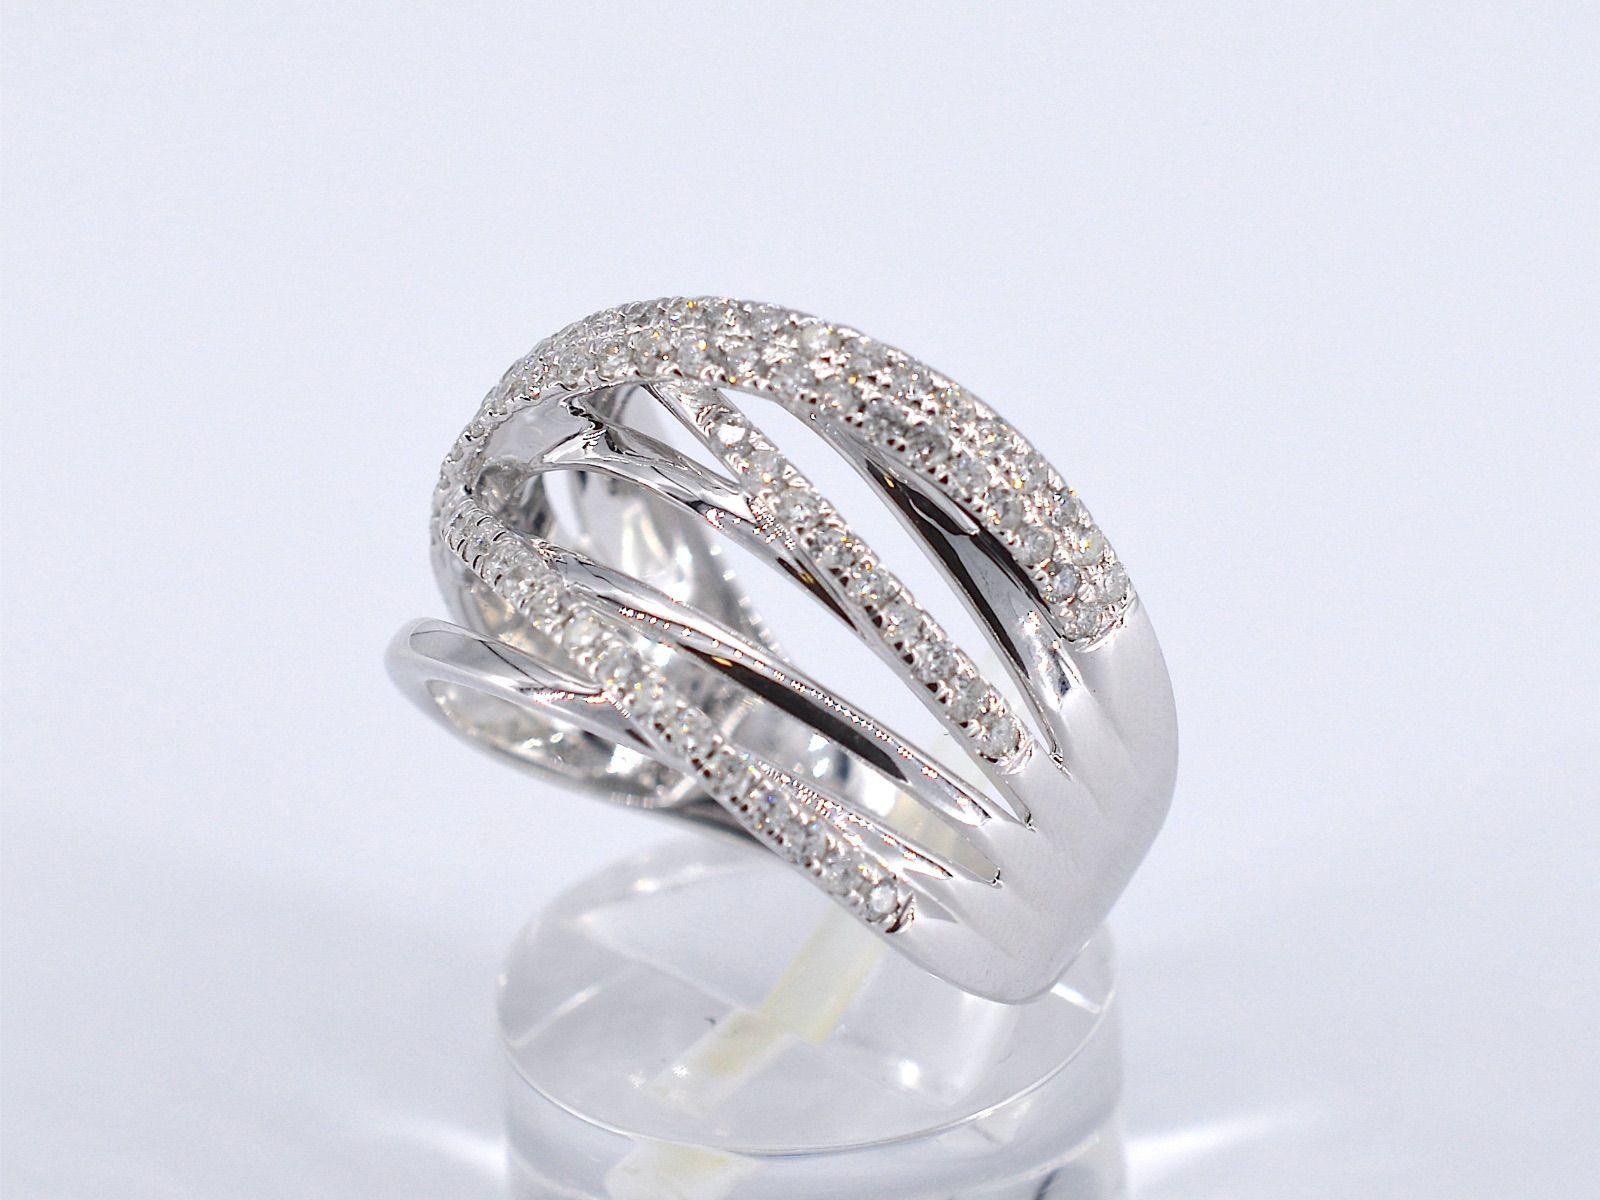 Brilliant Cut White Gold Design Ring with Brilliant Diamonds For Sale